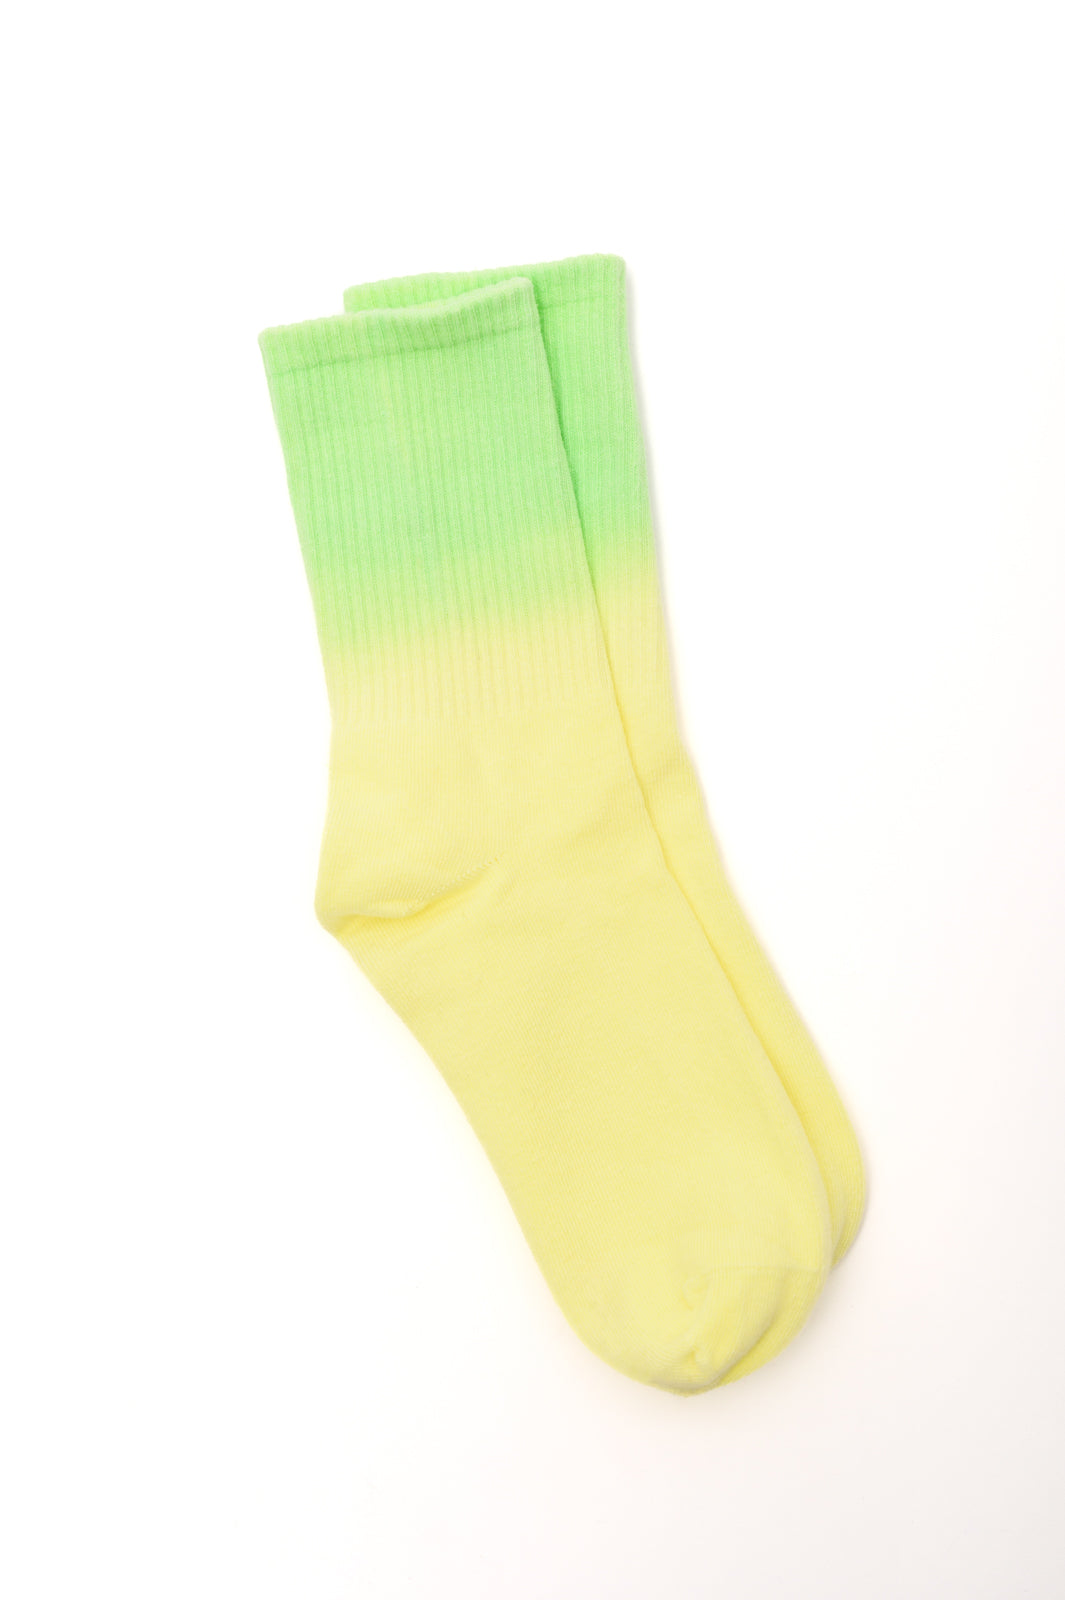 Tie Dye Yellow/Green - Women's Socks